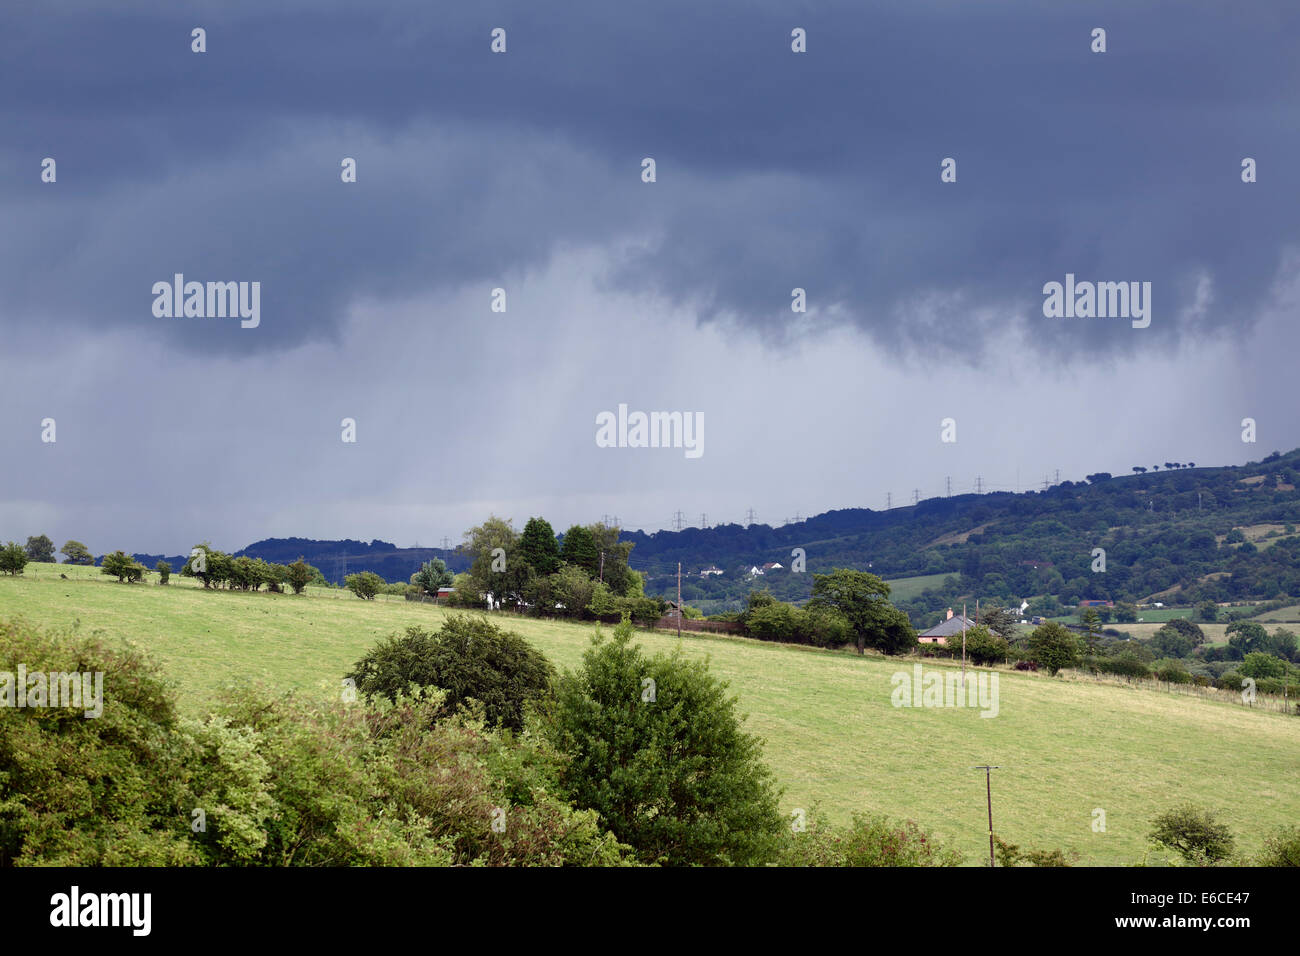 Gewitterwolken nähert sich über die Renfrewshire-Landschaft in der Nähe von Lochwinnoch im schottischen central Belt, UK Stockfoto